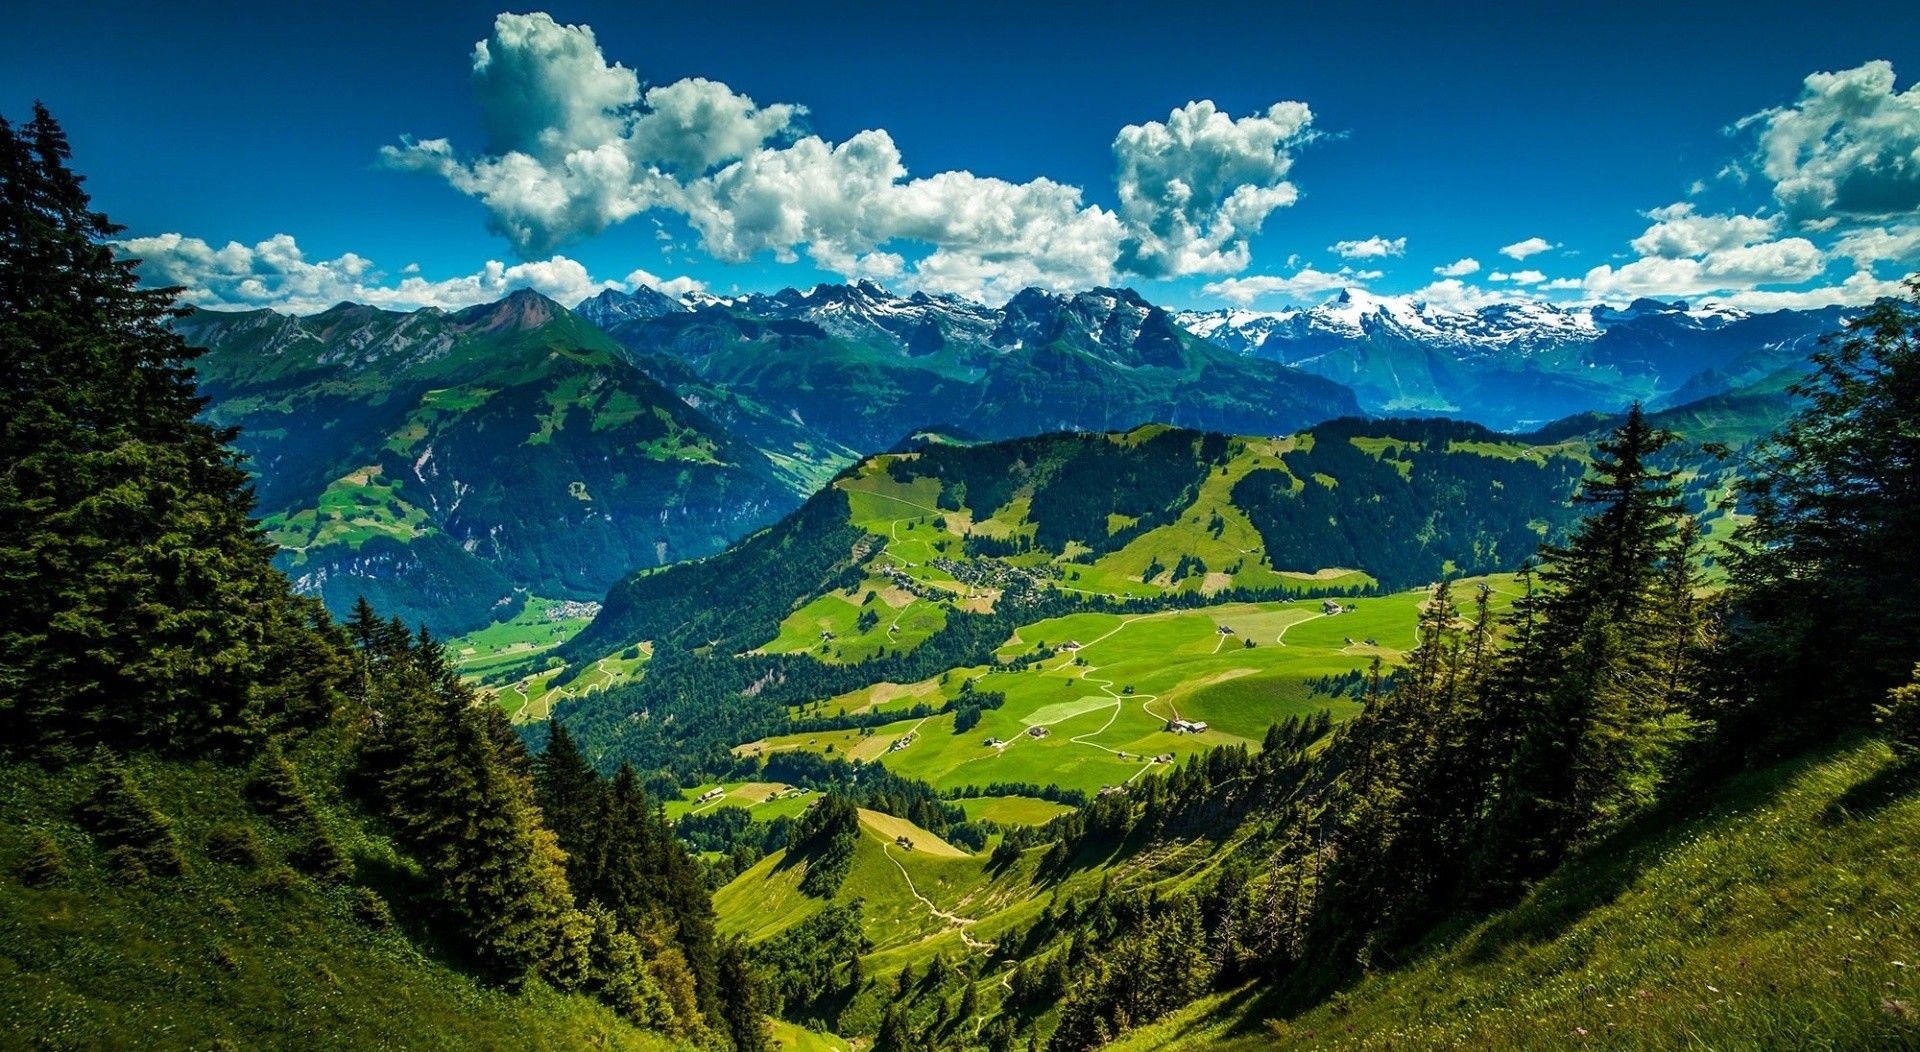 عکس طبیعت سرسبز کوه های آلپ سوئیس